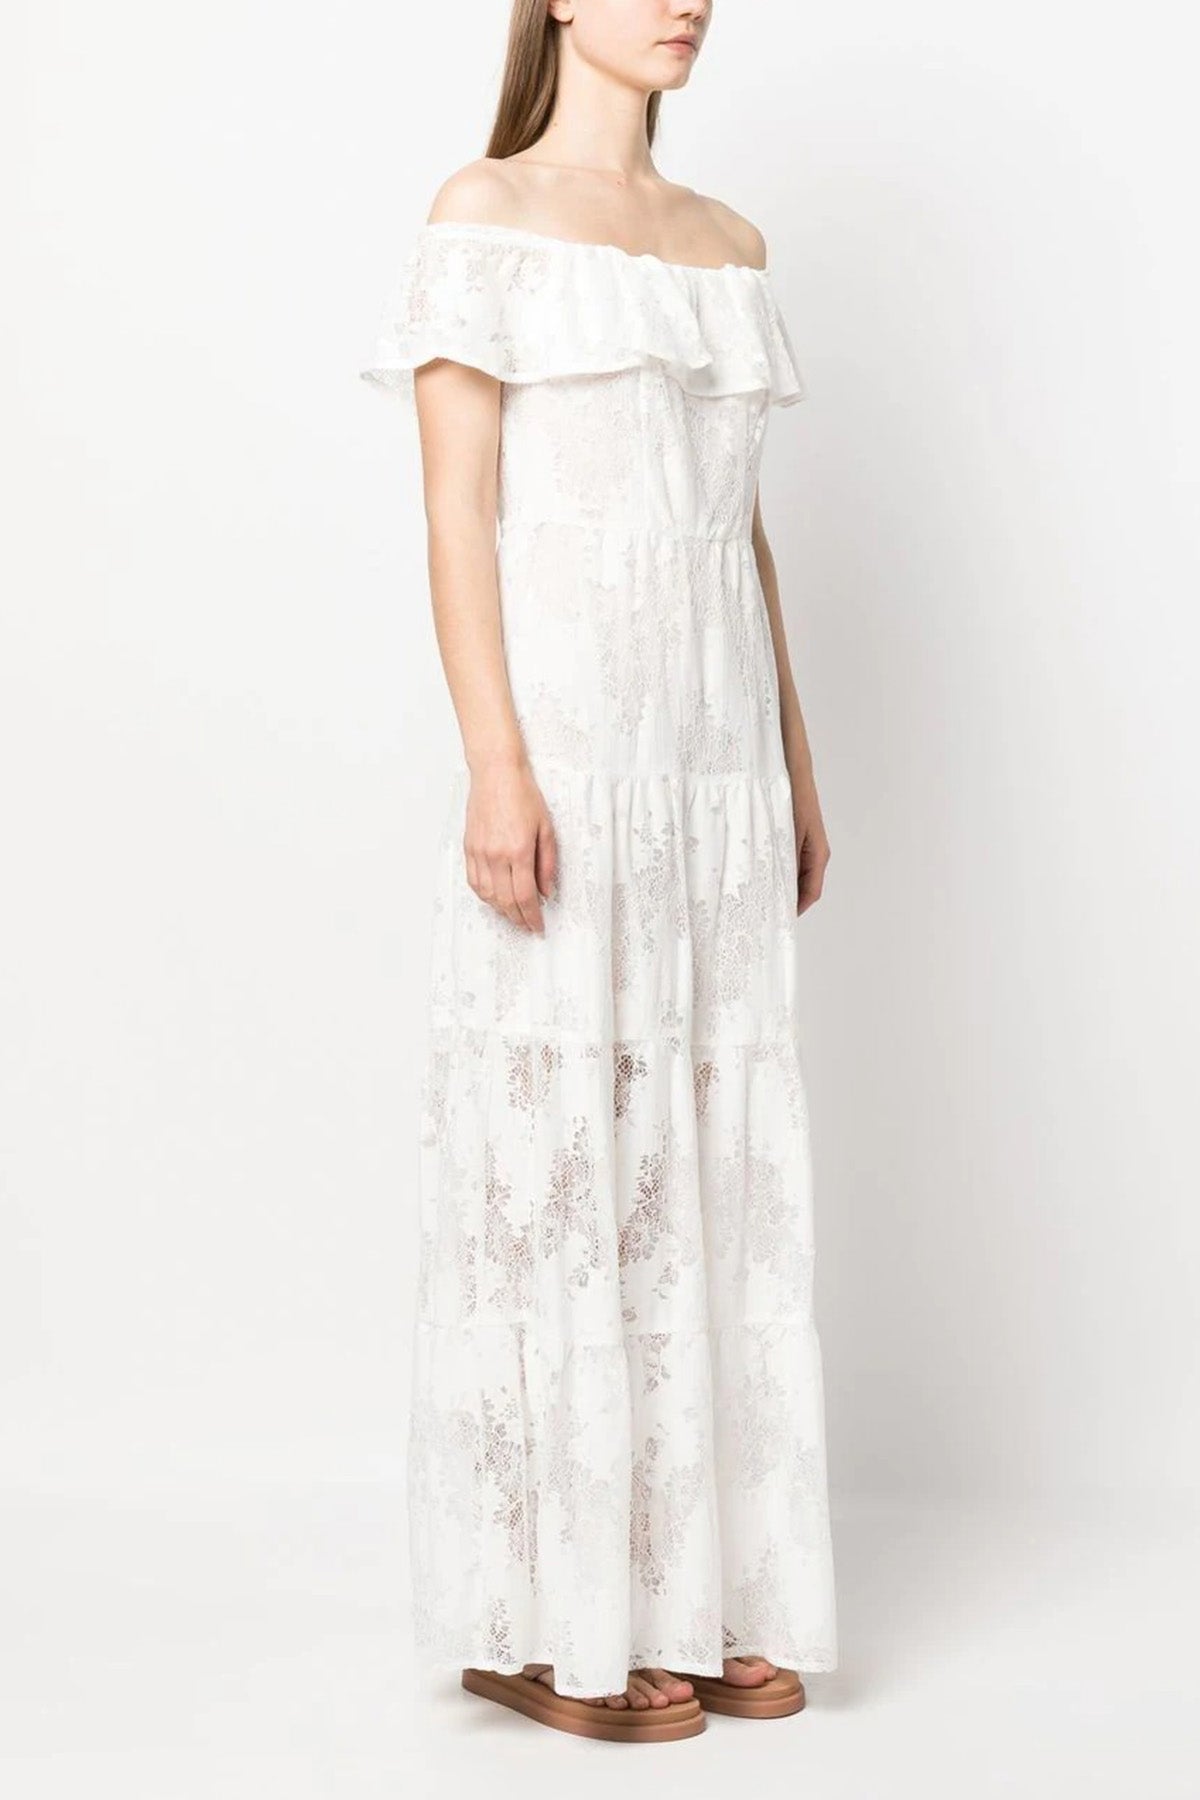 Liu Jo Fistolu Straplez Maxi Elbise-Libas Trendy Fashion Store